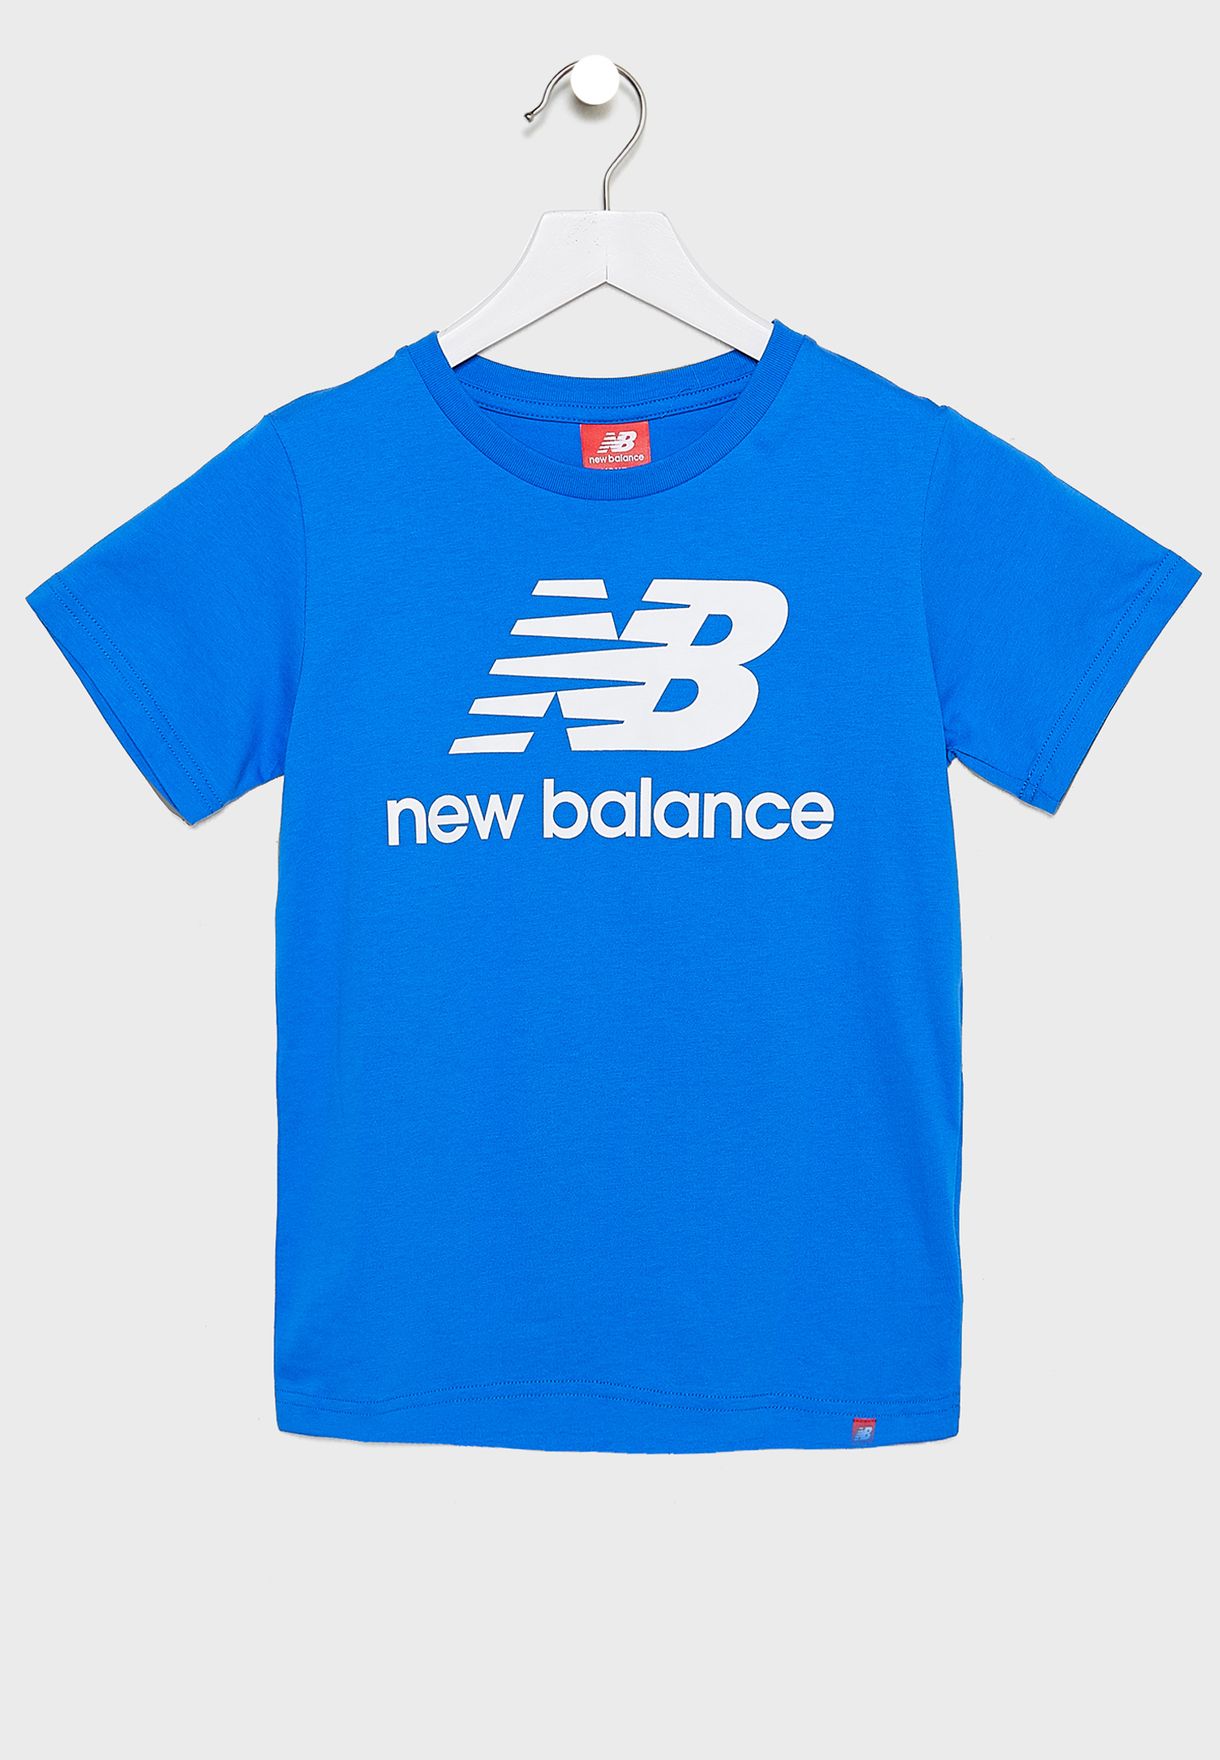 new balance blue t shirt